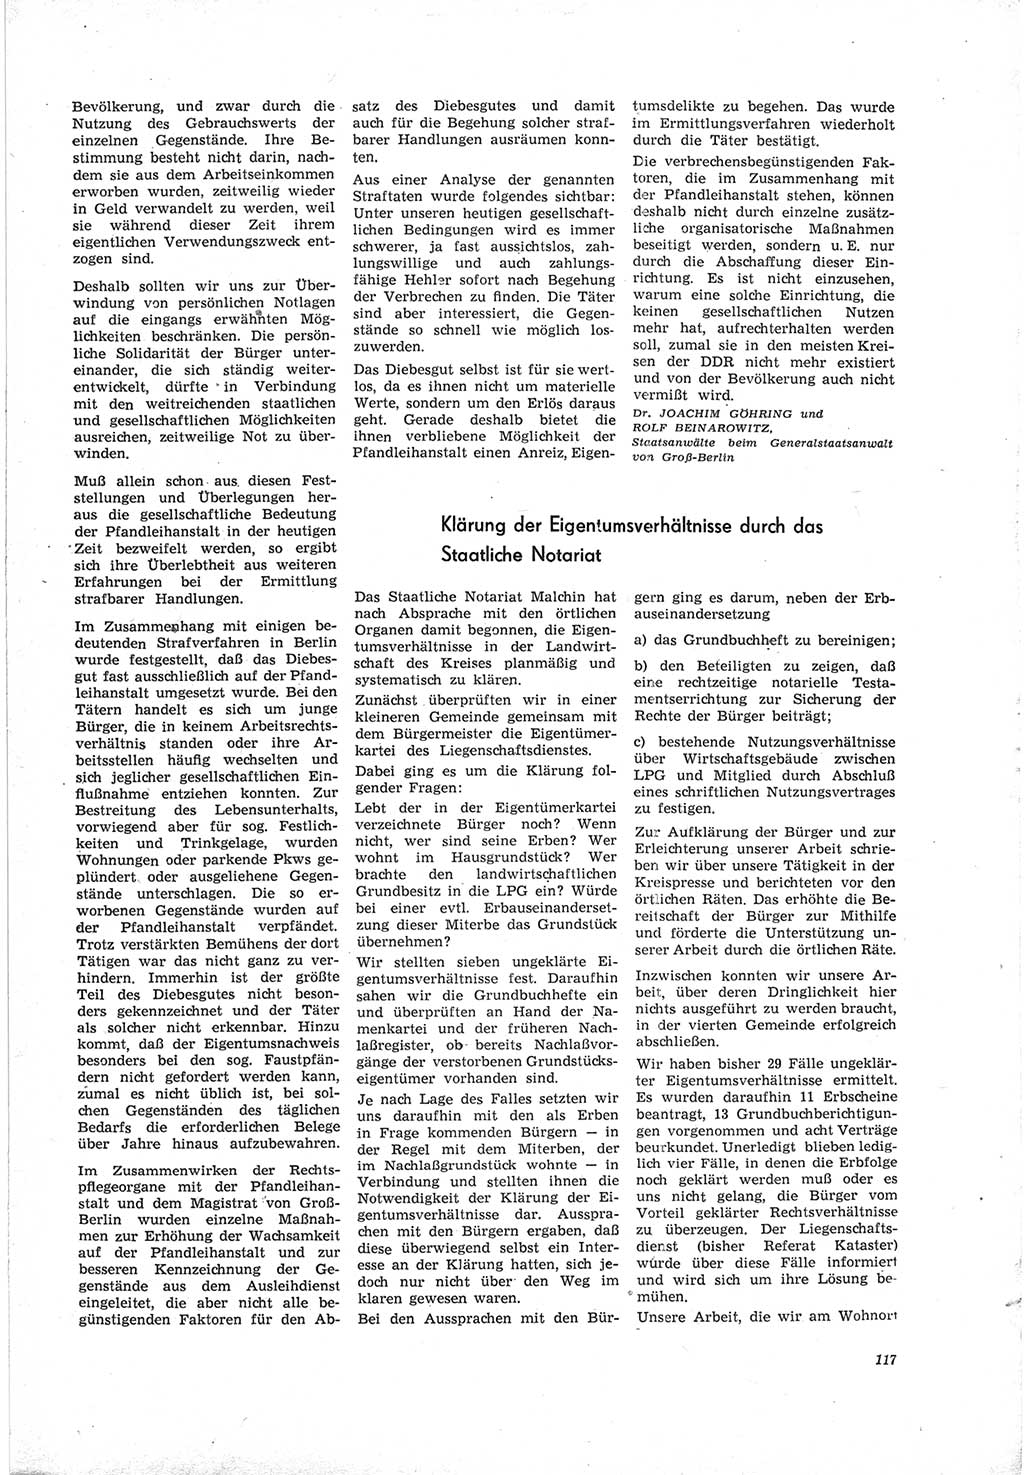 Neue Justiz (NJ), Zeitschrift für Recht und Rechtswissenschaft [Deutsche Demokratische Republik (DDR)], 19. Jahrgang 1965, Seite 117 (NJ DDR 1965, S. 117)